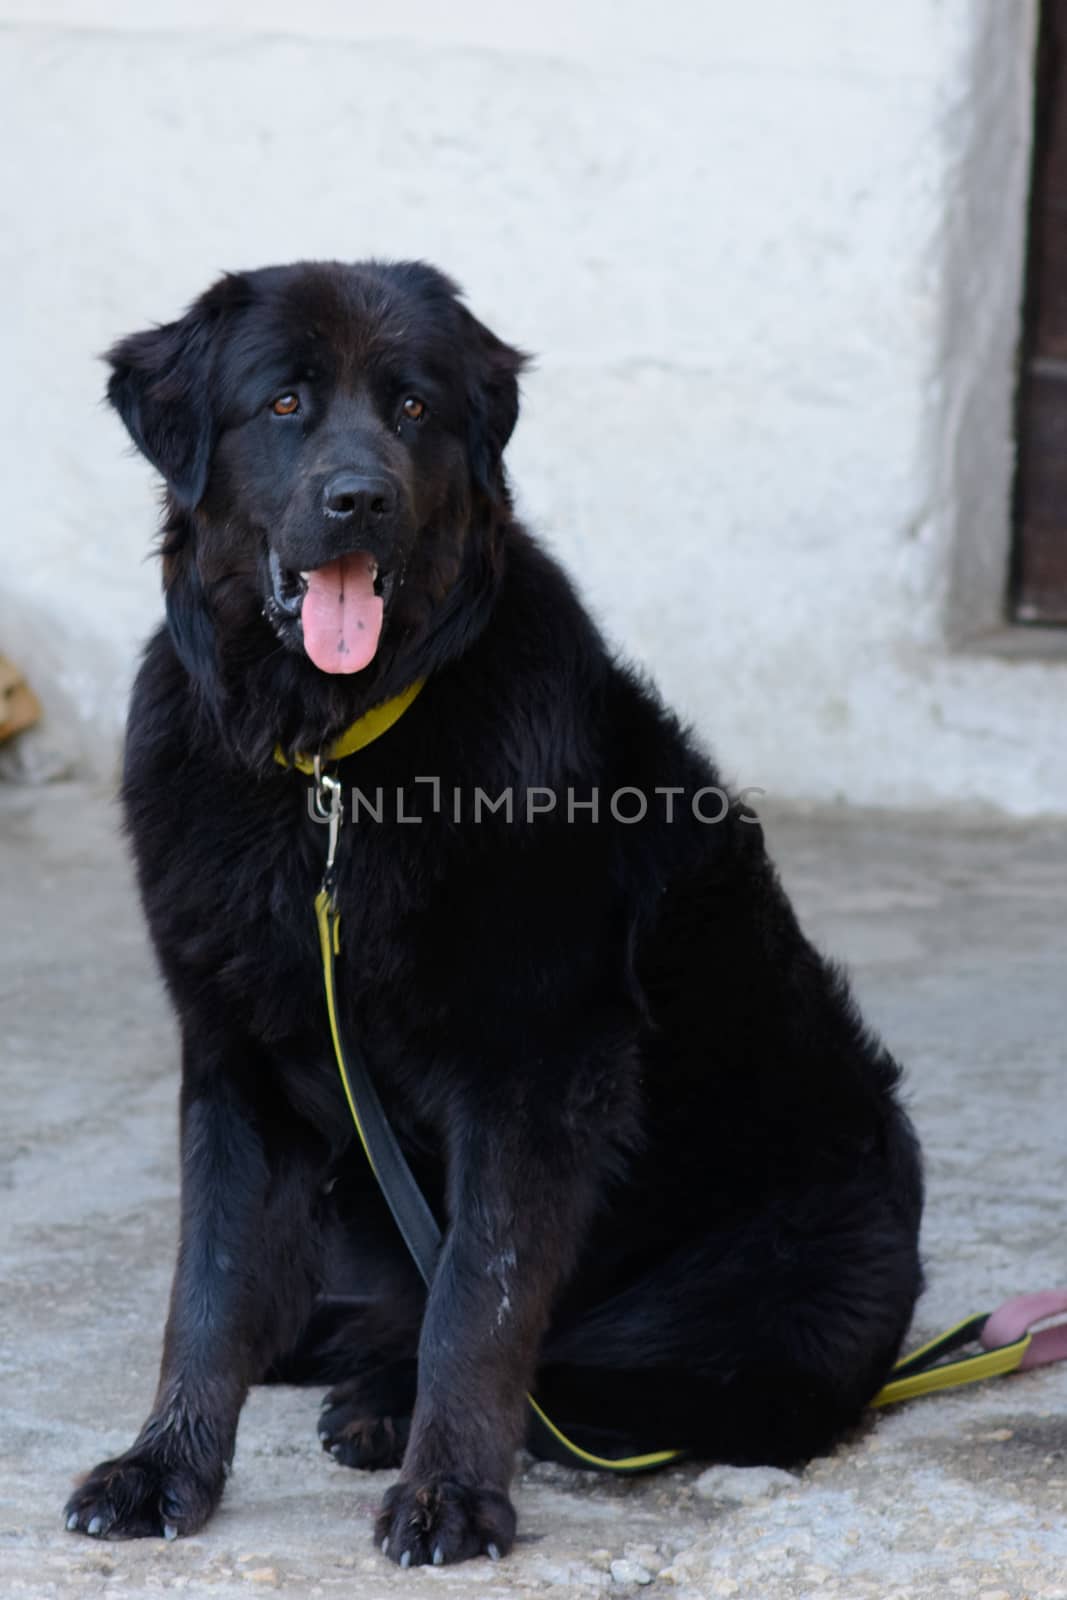 Black dog on a leash